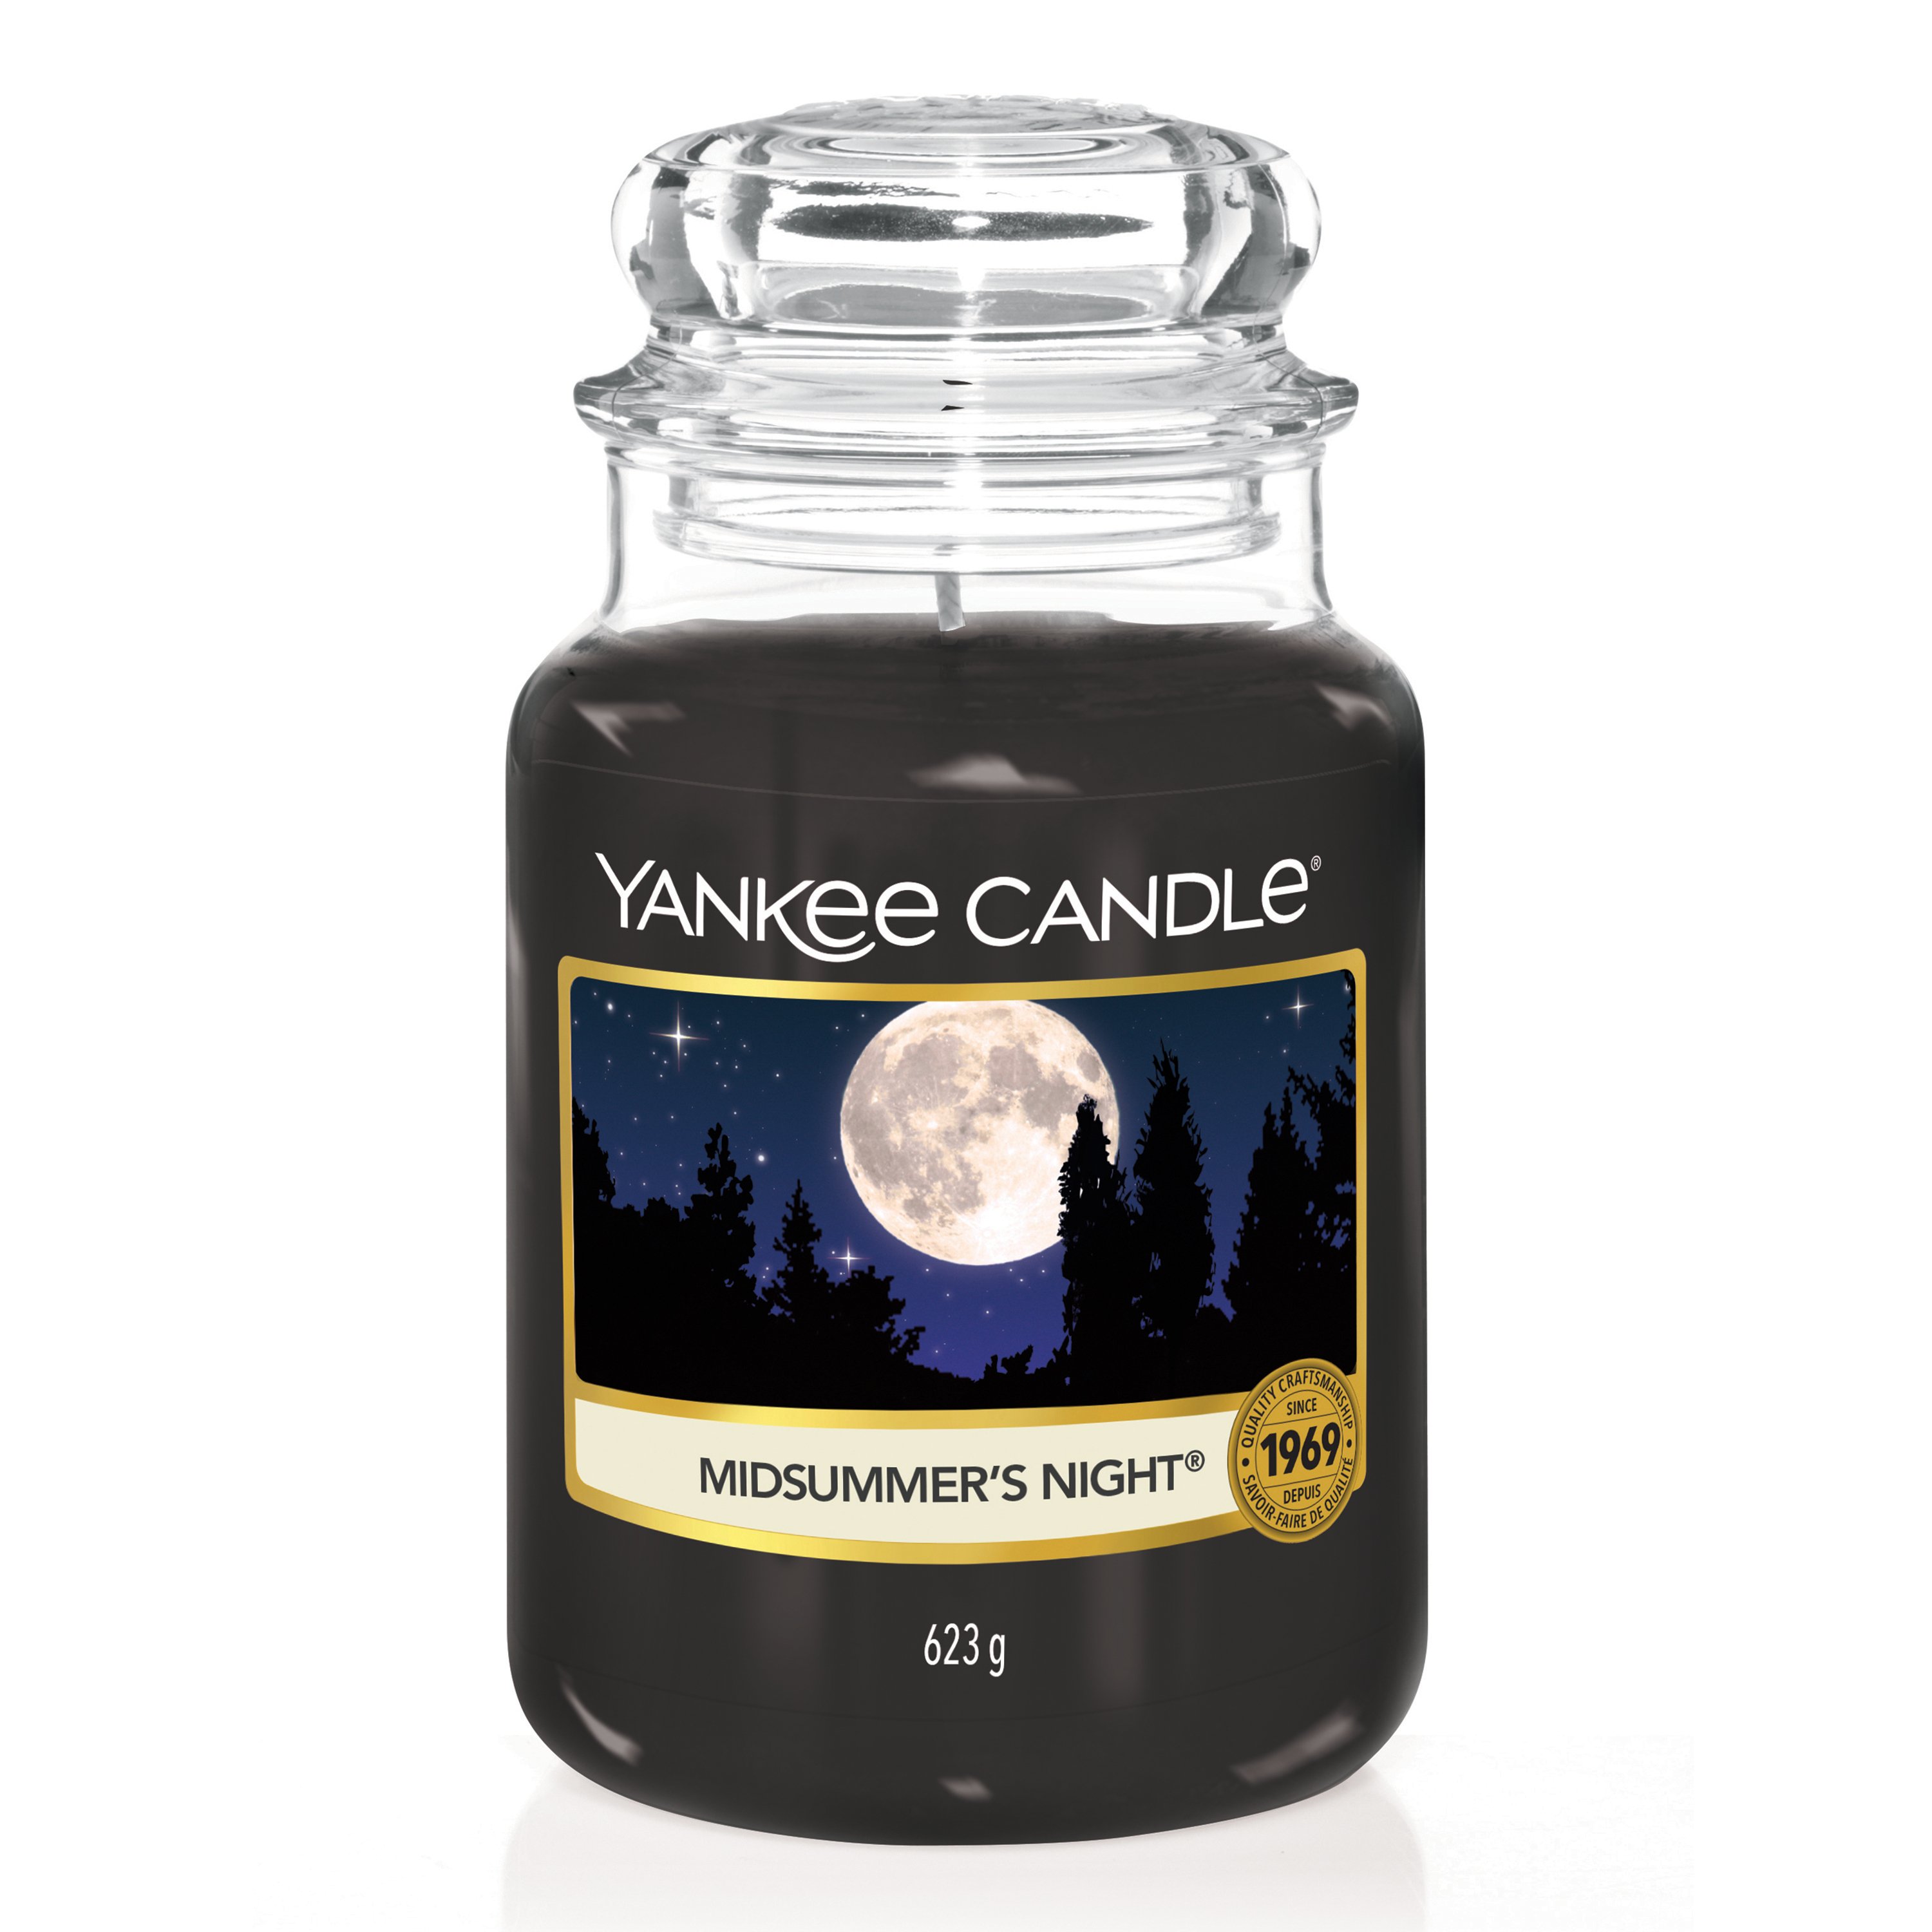 Midsummer's Night® Original Large Jar Candle - Original Jar